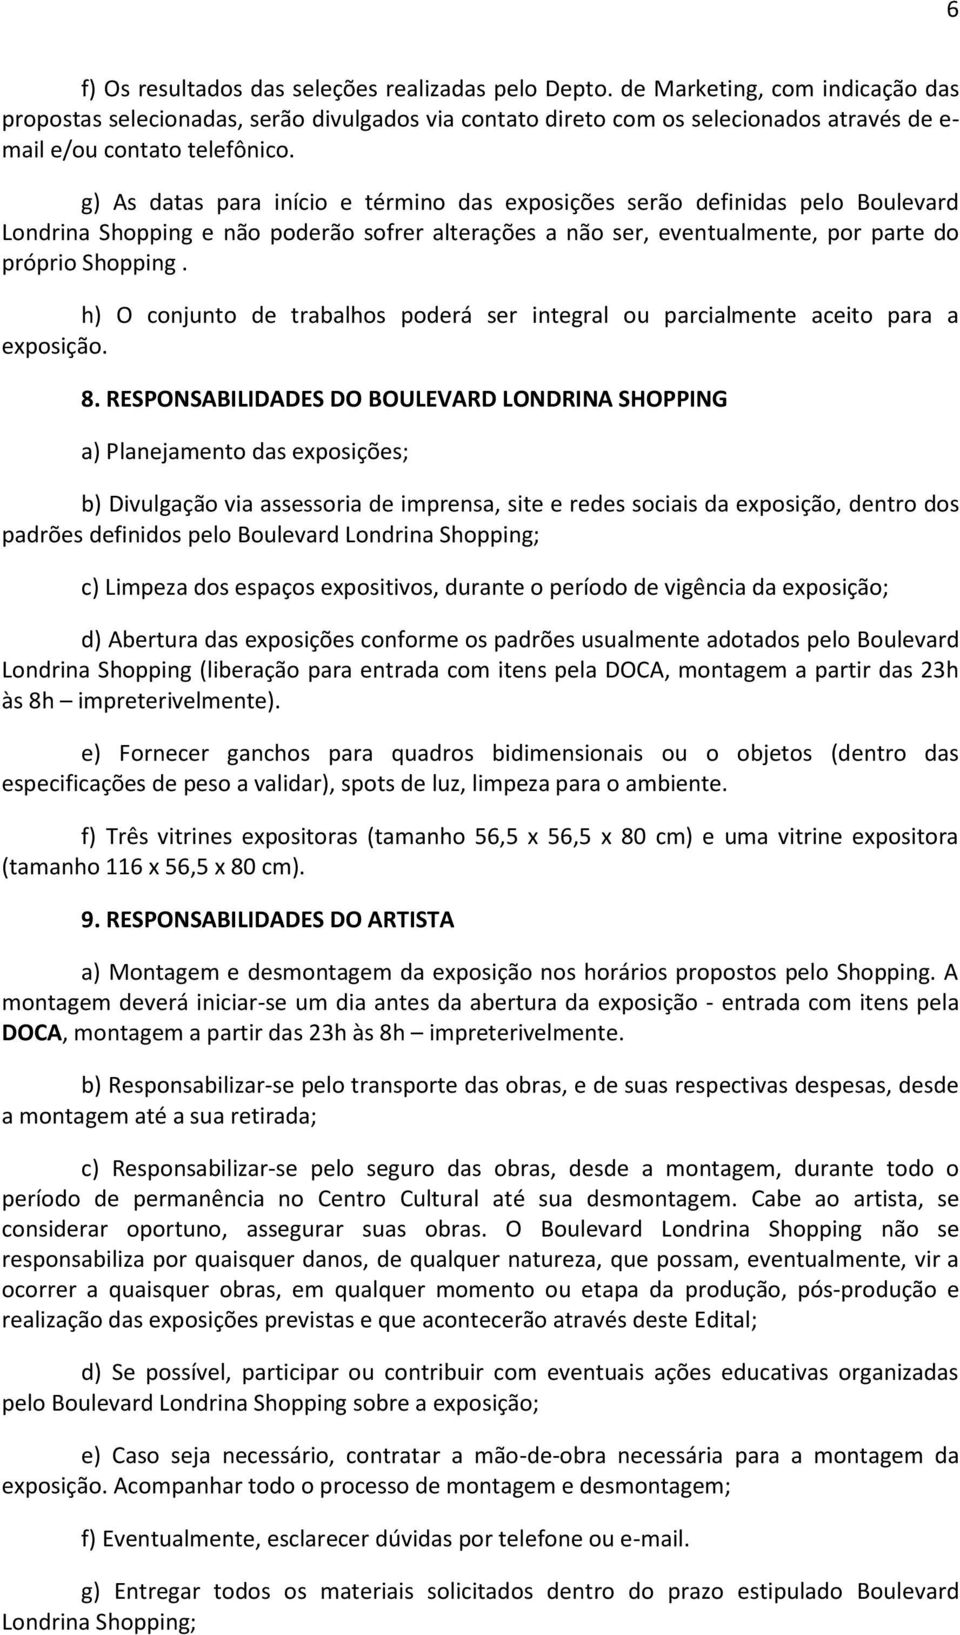 g) As datas para início e término das exposições serão definidas pelo Boulevard Londrina Shopping e não poderão sofrer alterações a não ser, eventualmente, por parte do próprio Shopping.